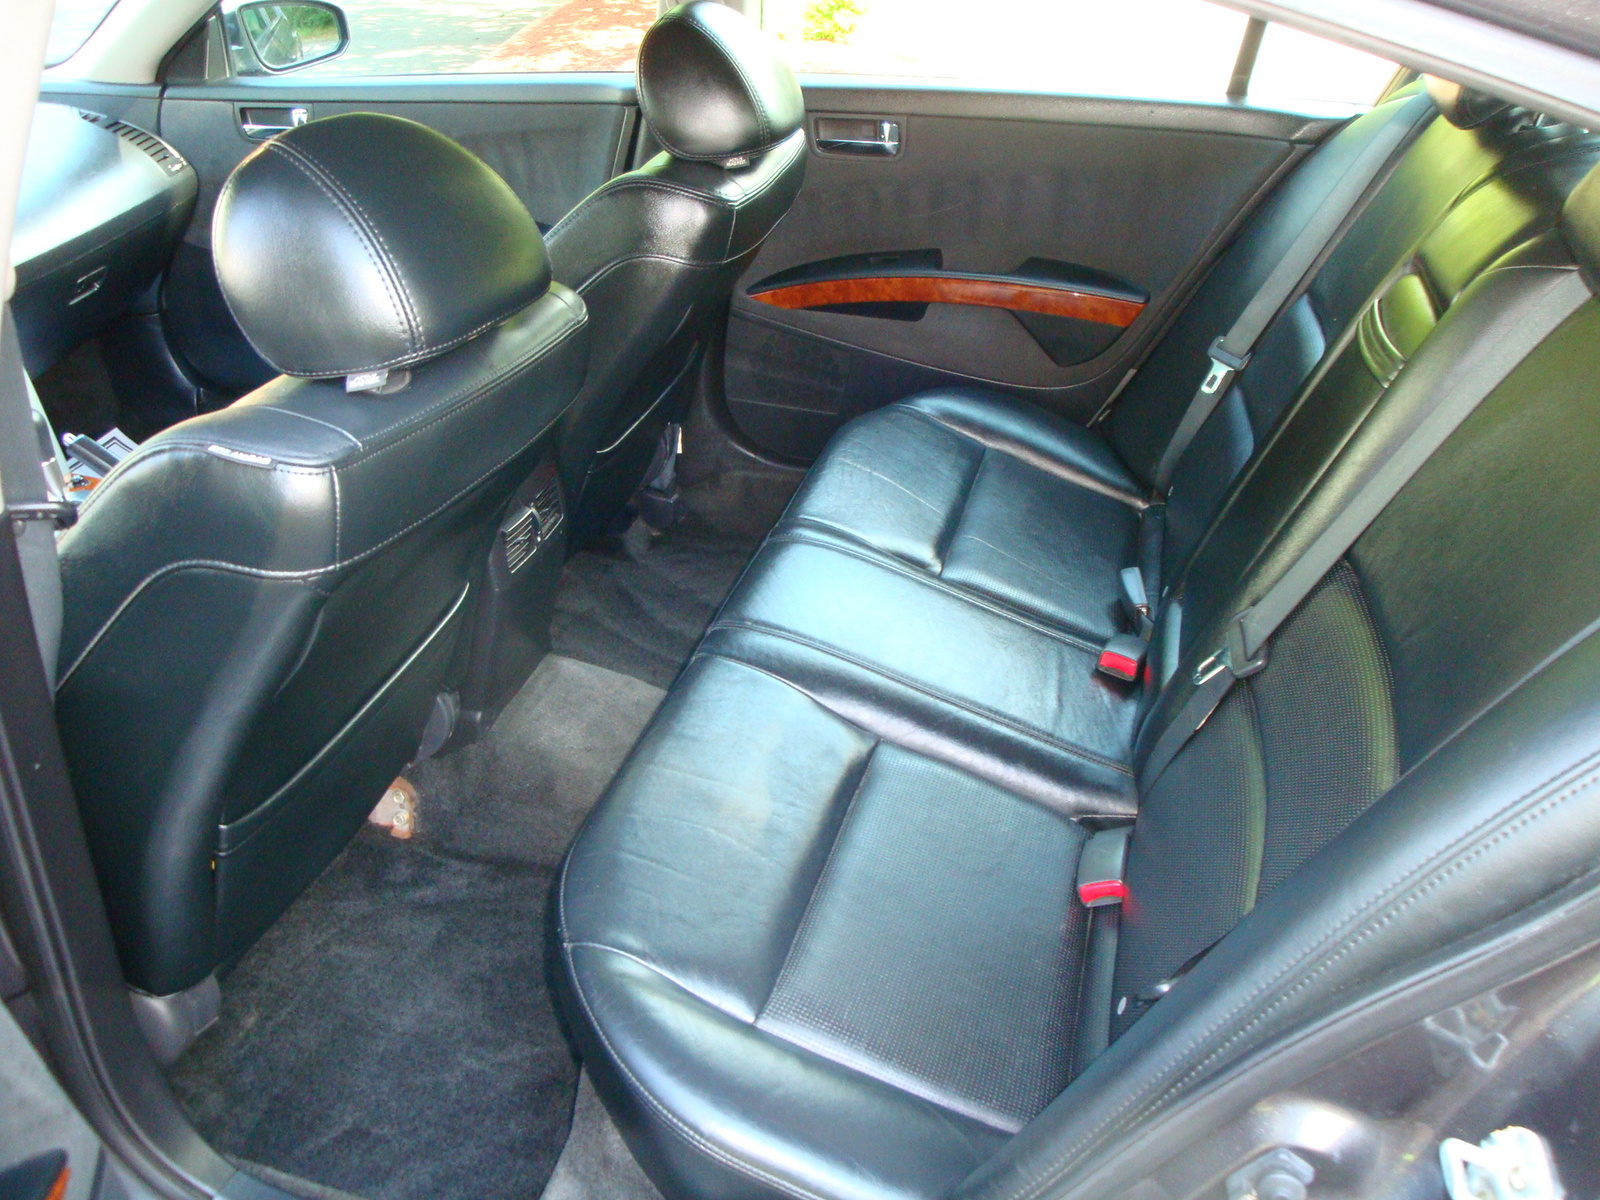 2005 Nissan maxima interior parts #2